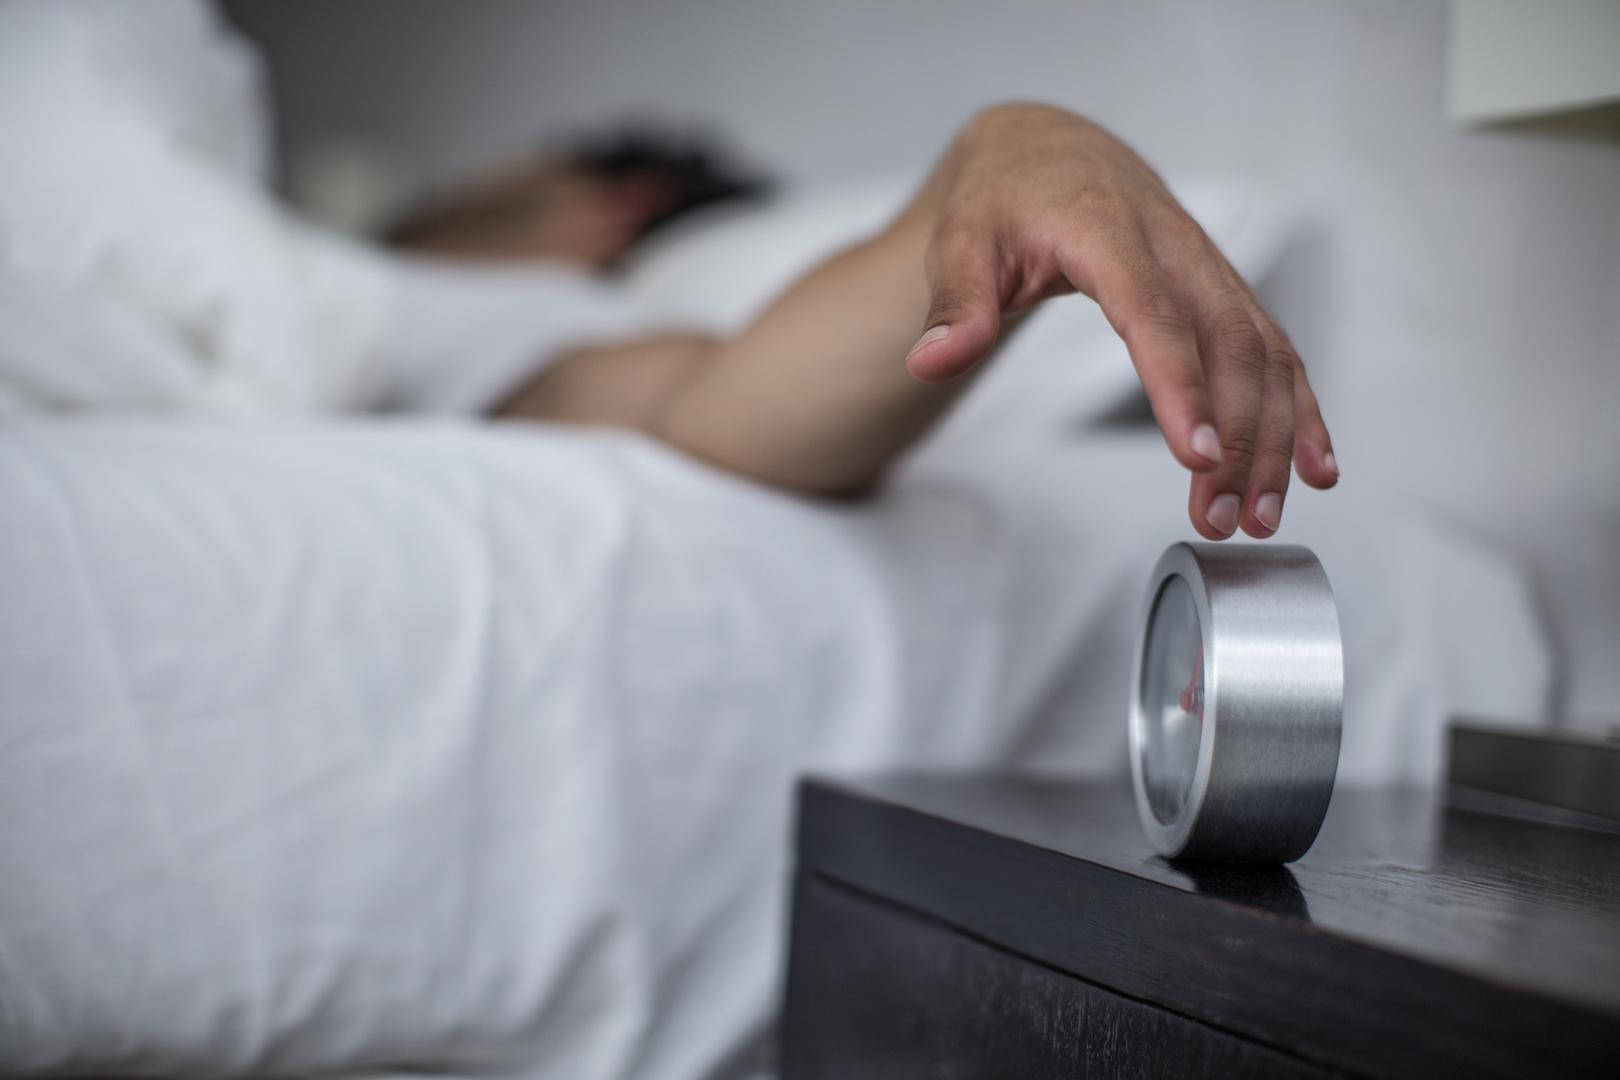 دراسة تكشف لماذا قد يكون الاستيقاظ مبكرا للعمل سيئا لحياتنا